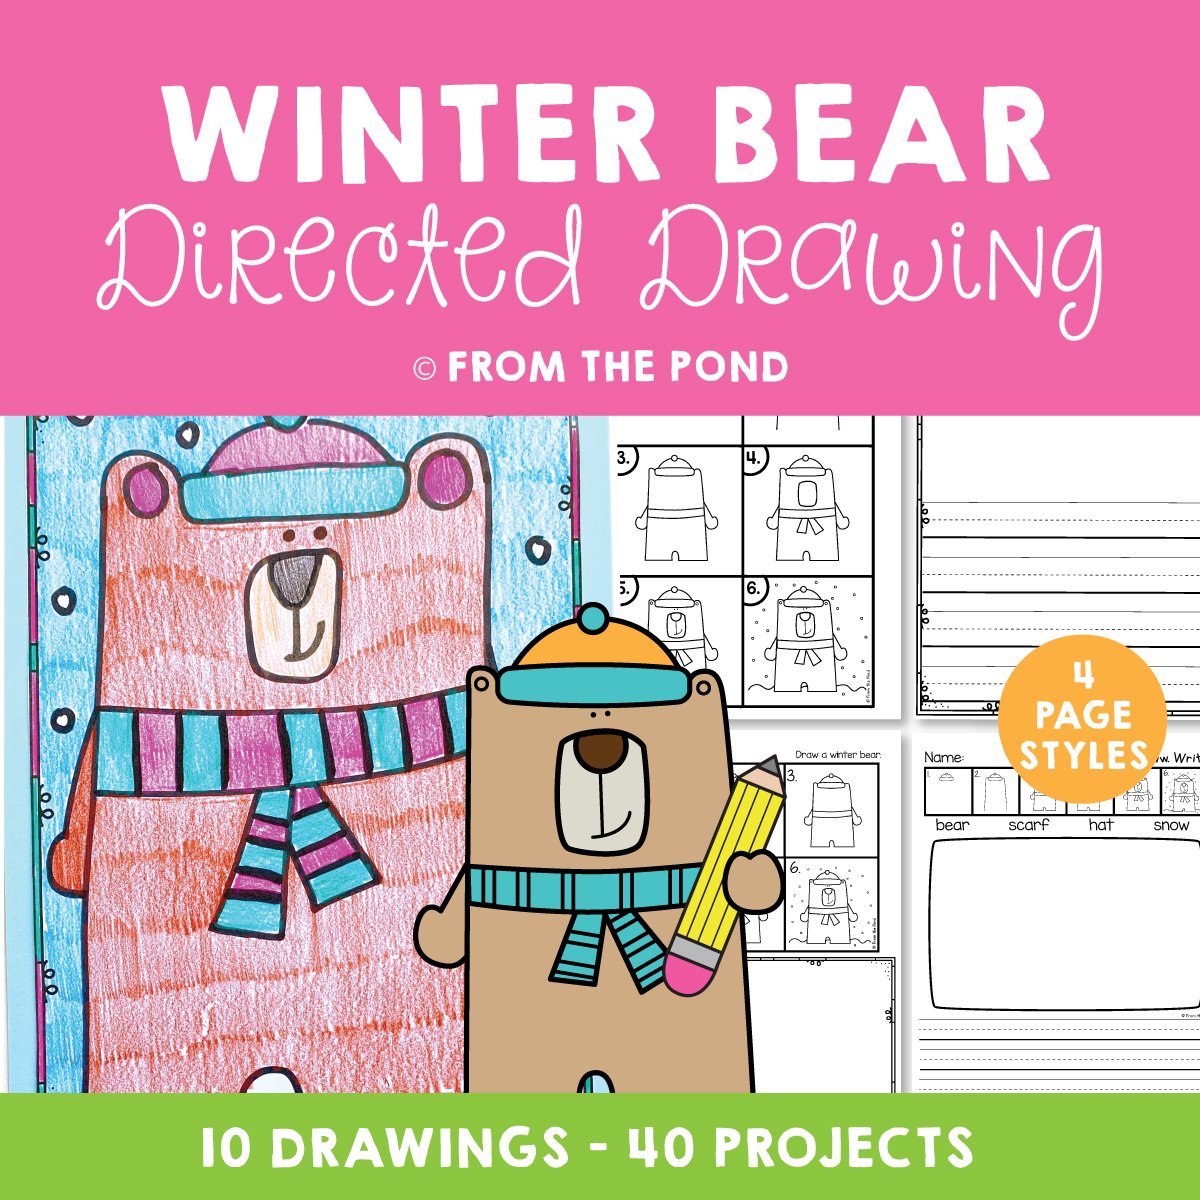 Winter Bear Drawing